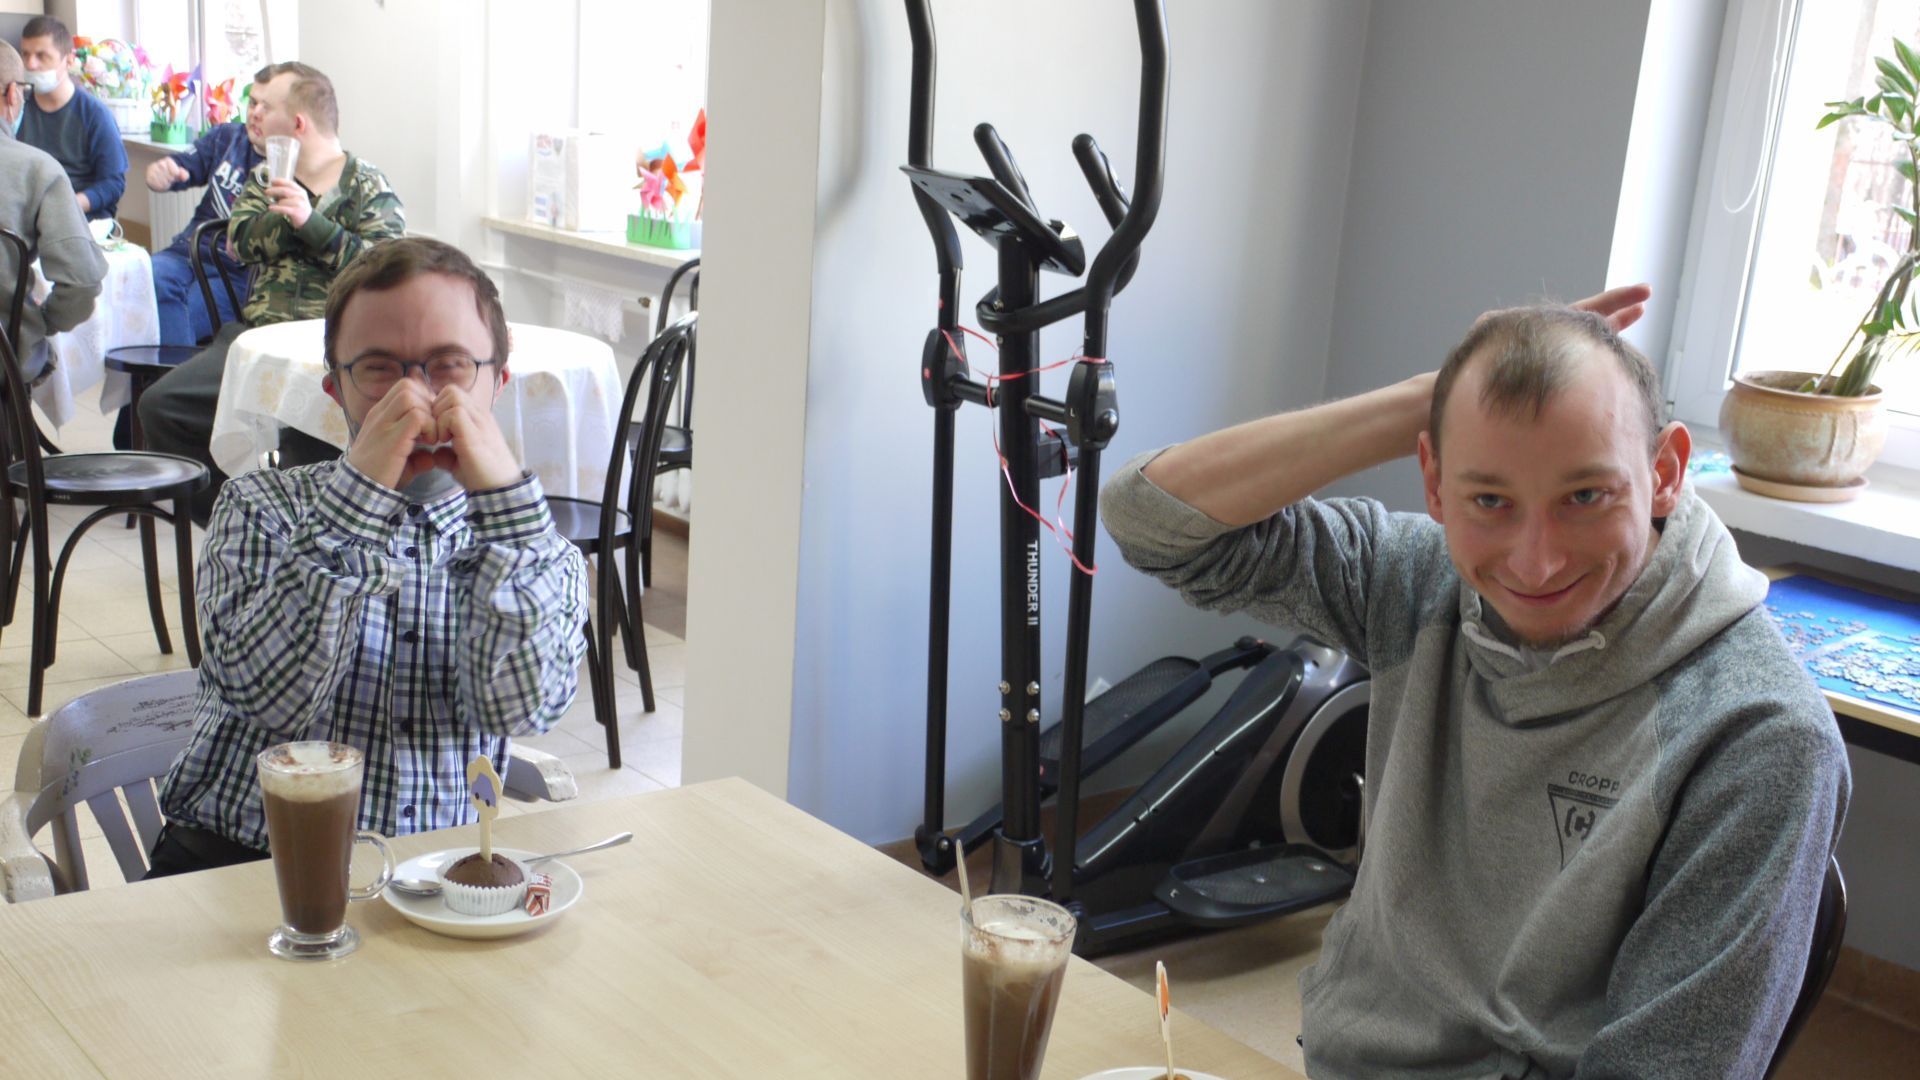 Maciej A. i Jakub K. siedzący przy stoliku z czekoladą na gorąco i babeczką. Jakub K. pokazuje do zdjęcia dłonie ułożone w kształt serca.